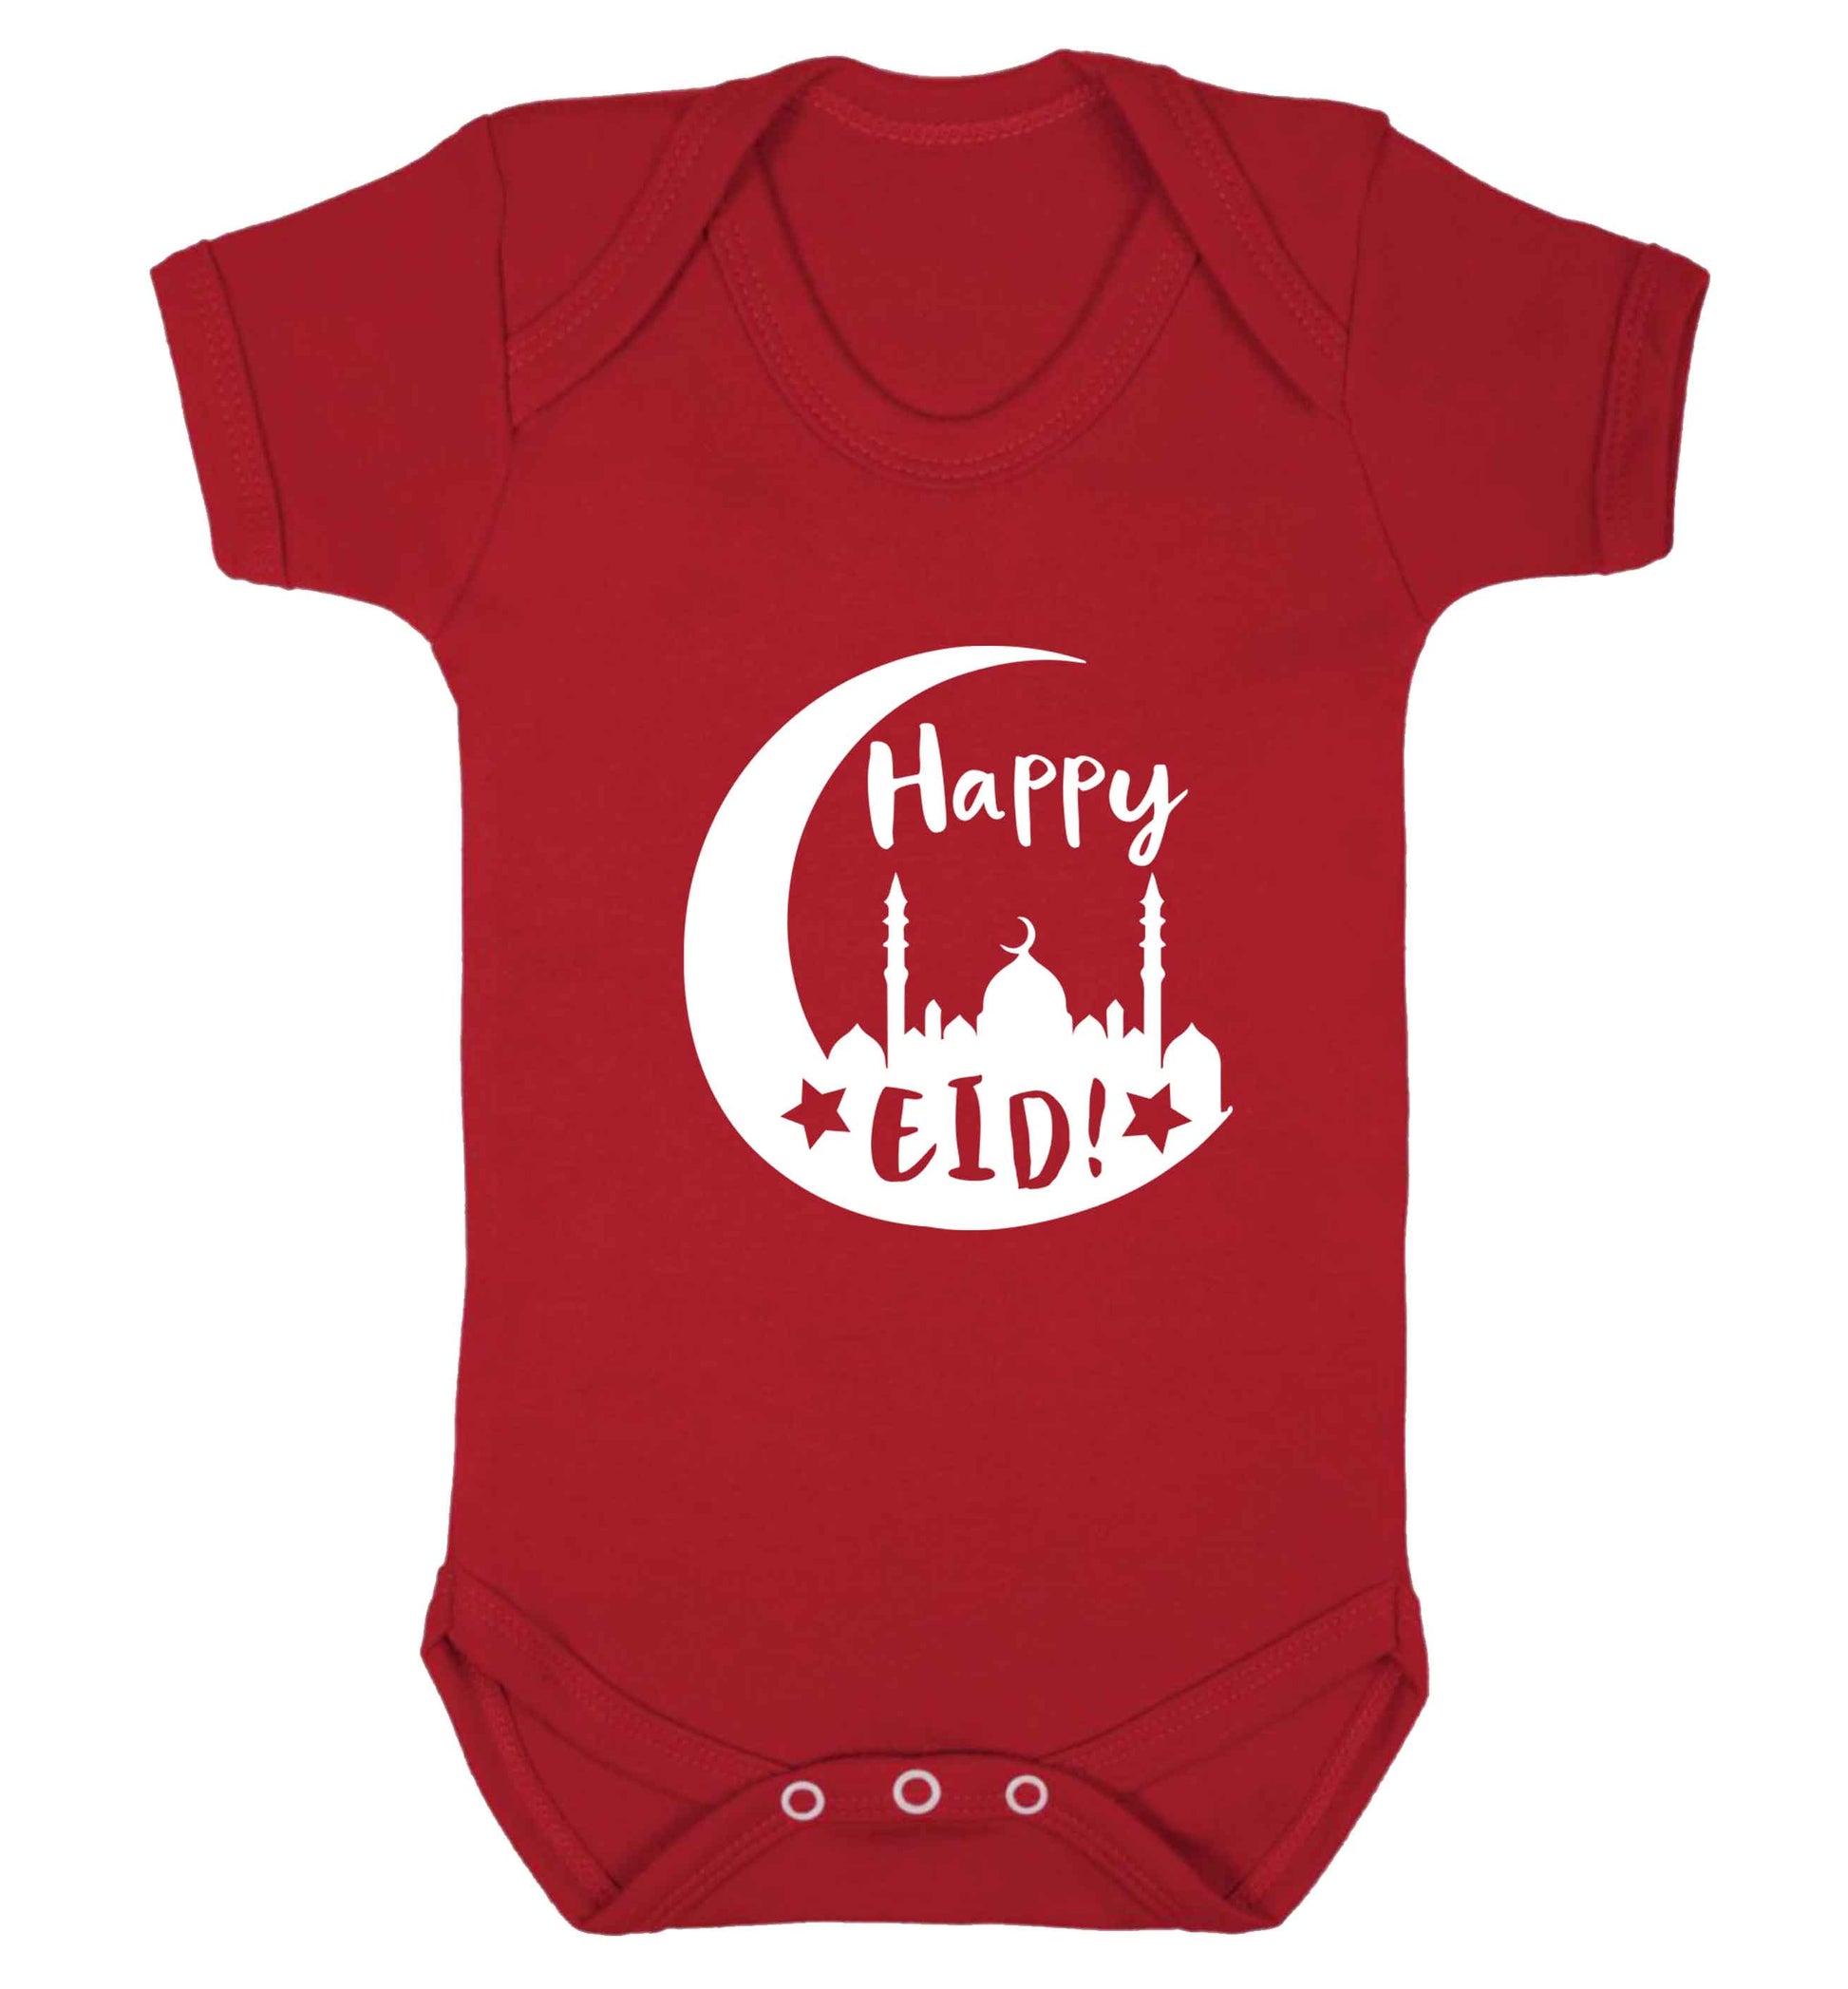 Happy Eid baby vest red 18-24 months